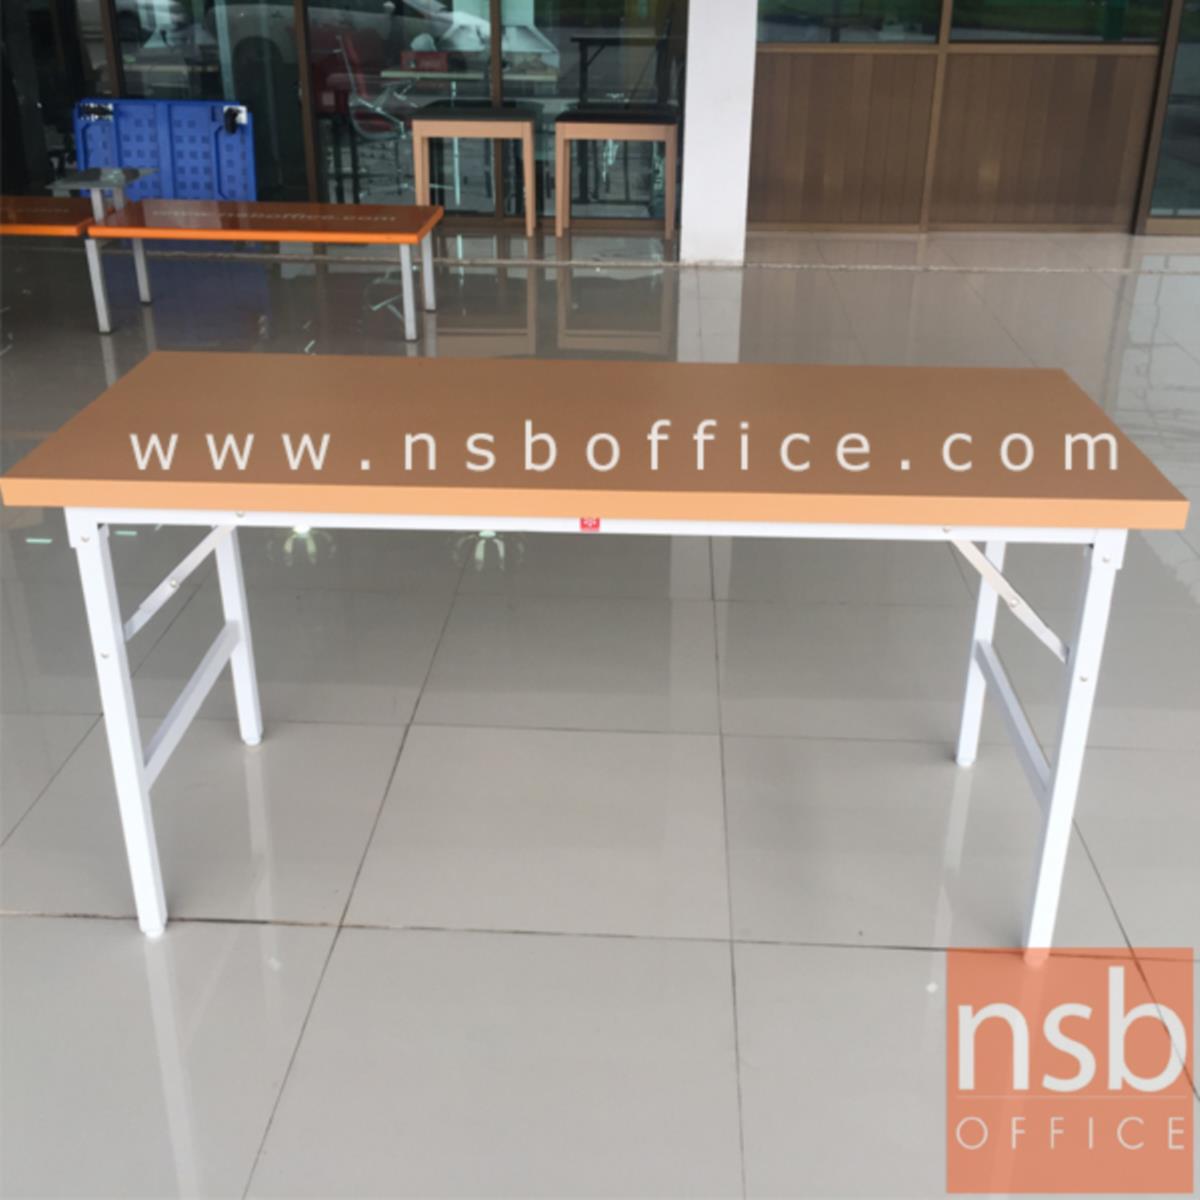 โต๊ะพับหน้าเหล็ก  รุ่น FGS-60150, รุ่น FGS-60180 ขนาด 150W และขนาด 180W cm. ขาเหล็กพ่นสี